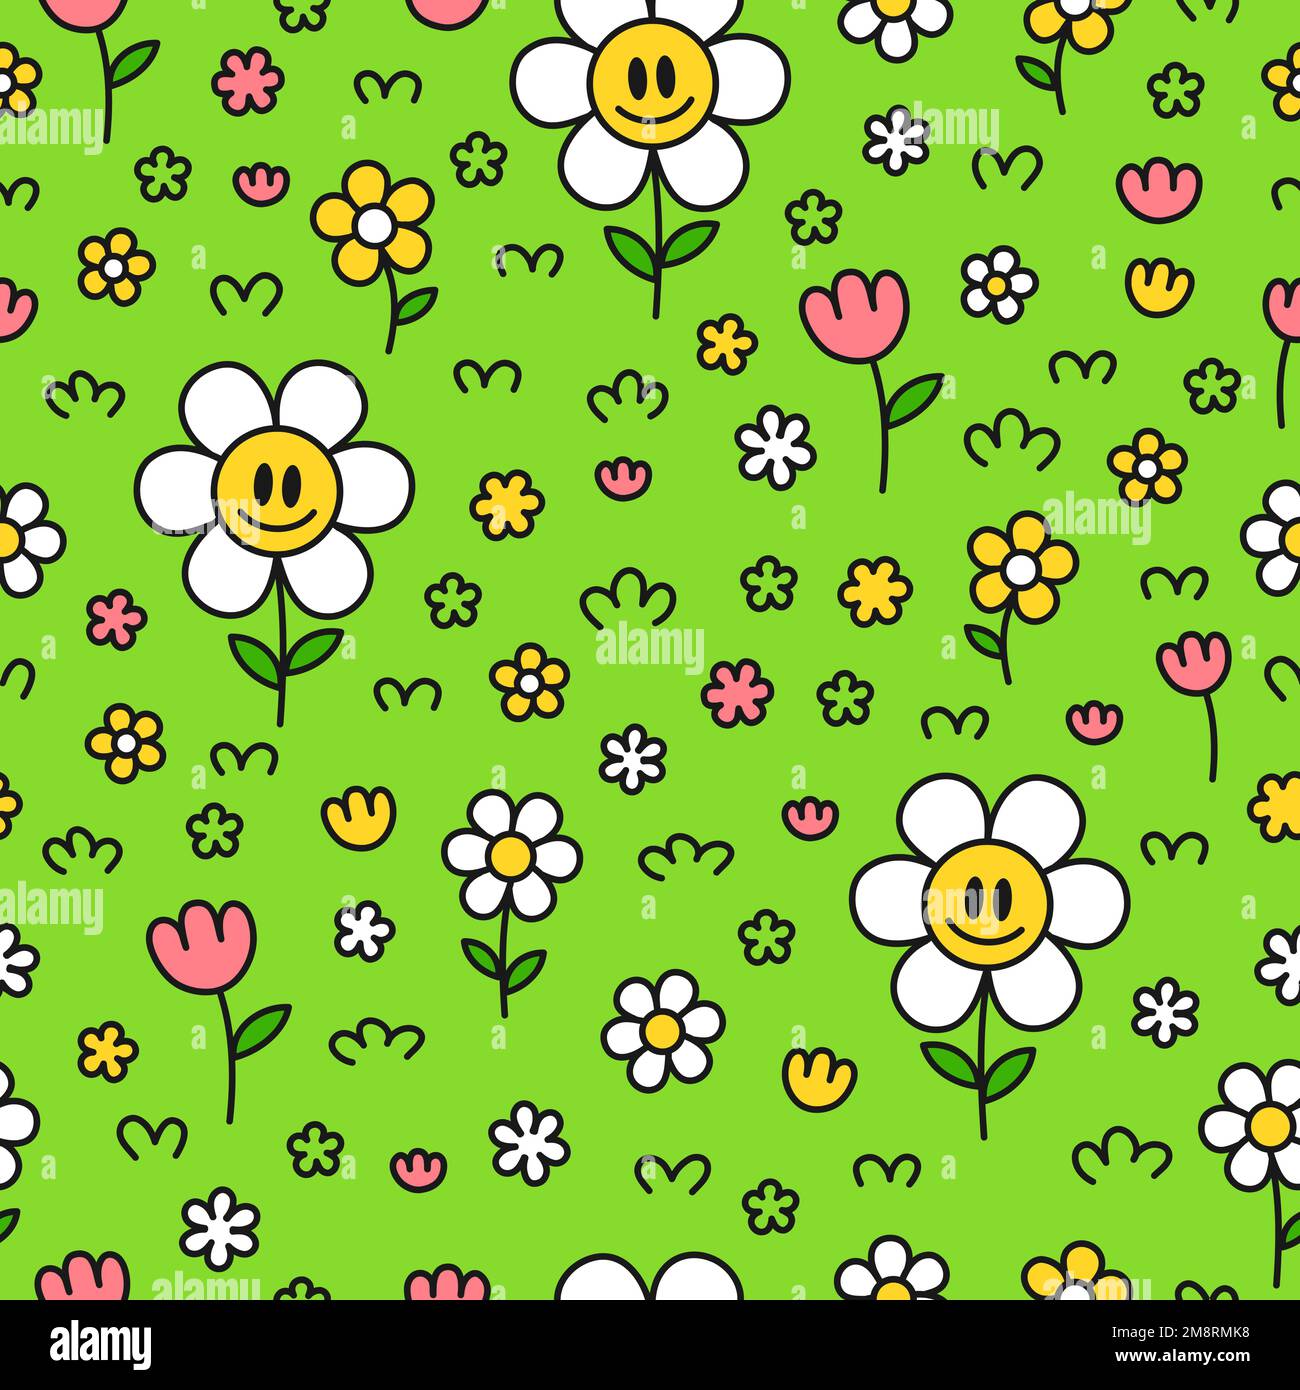 Flores divertidas lindas de la cara de la sonrisa kawaii sobre fondo verde  arte de patrón sin fisuras. Vector ilustración de personaje kawaii de  dibujos animados  sonrisa vintage cara flor de